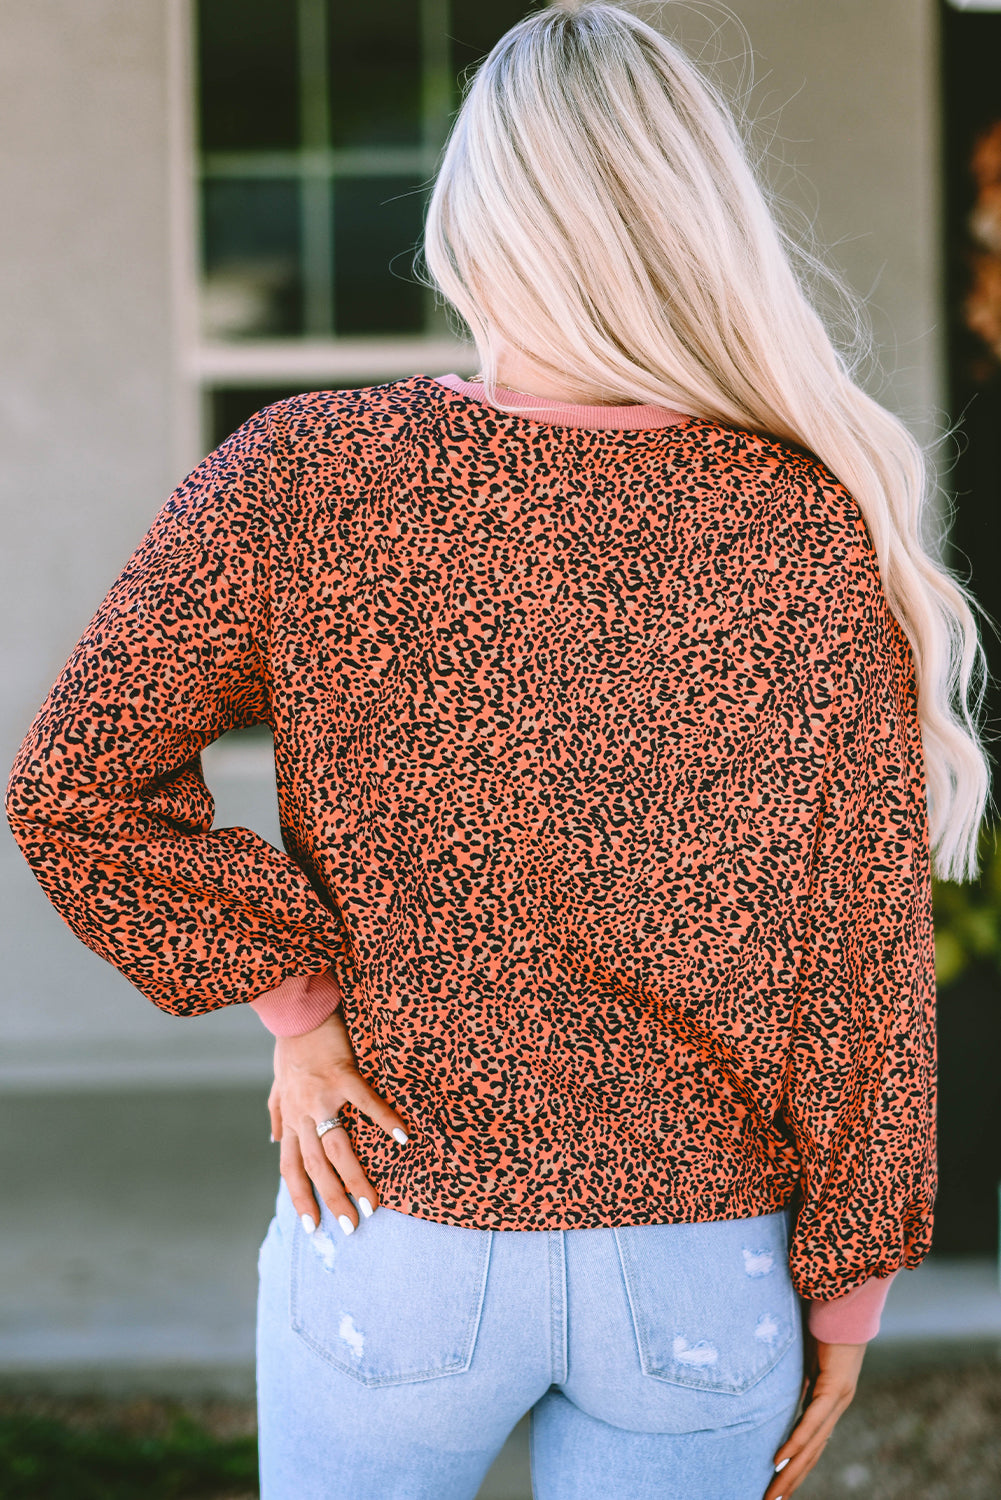 Vintage pulover majica s mjehurićima u obliku leoparda